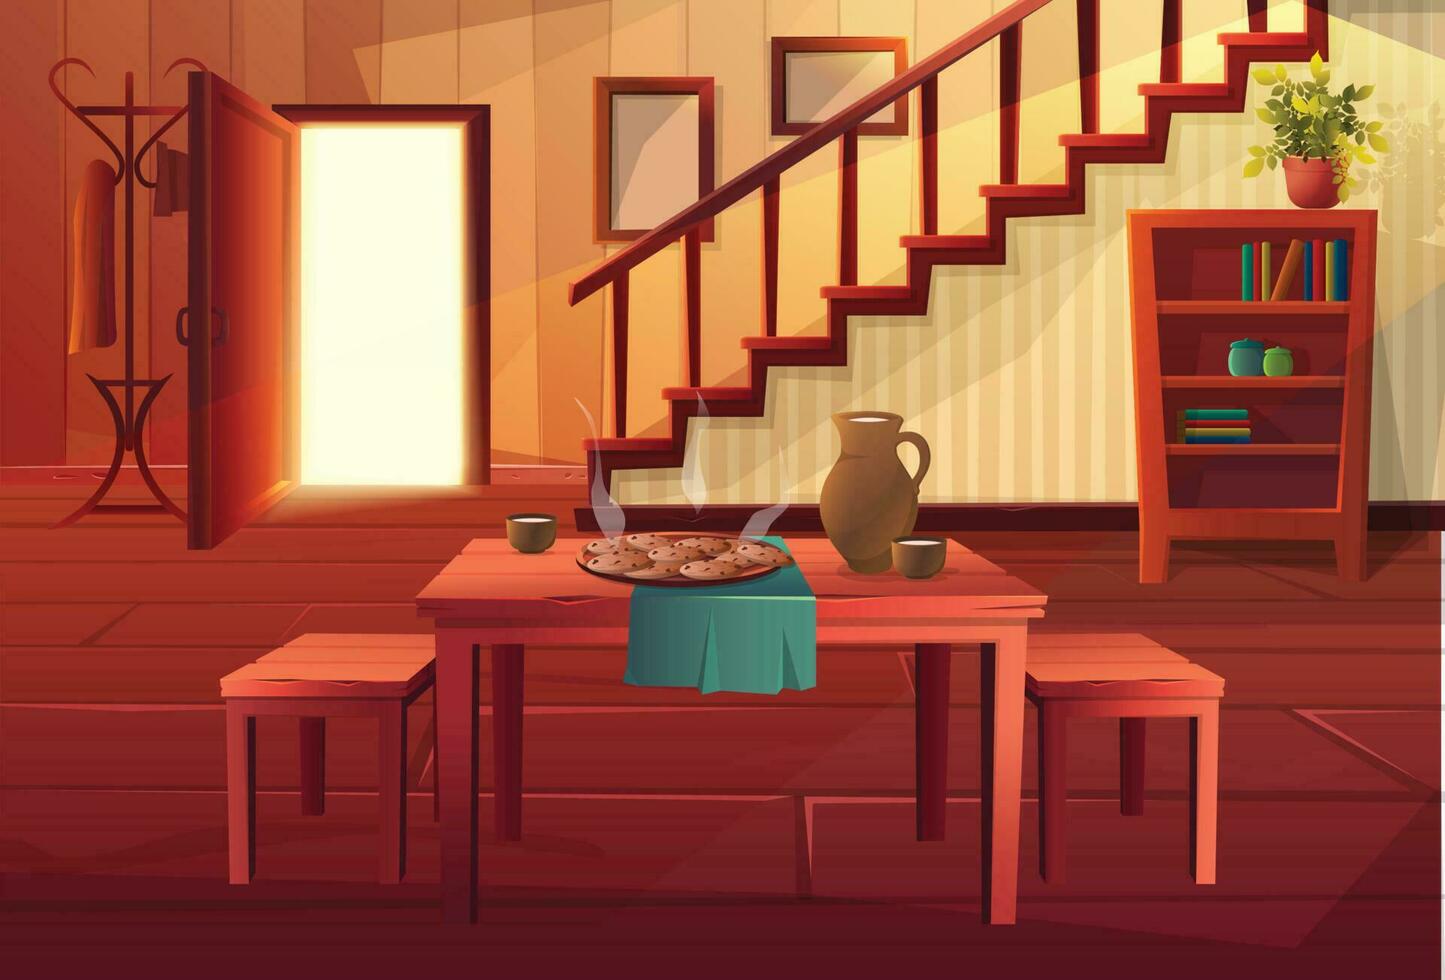 vecteur dessin animé style illustration de maison intérieur. entrée ouvert porte avec escaliers et rustique ancien meubles et en bois sol. à manger table avec chaud repas sur il.